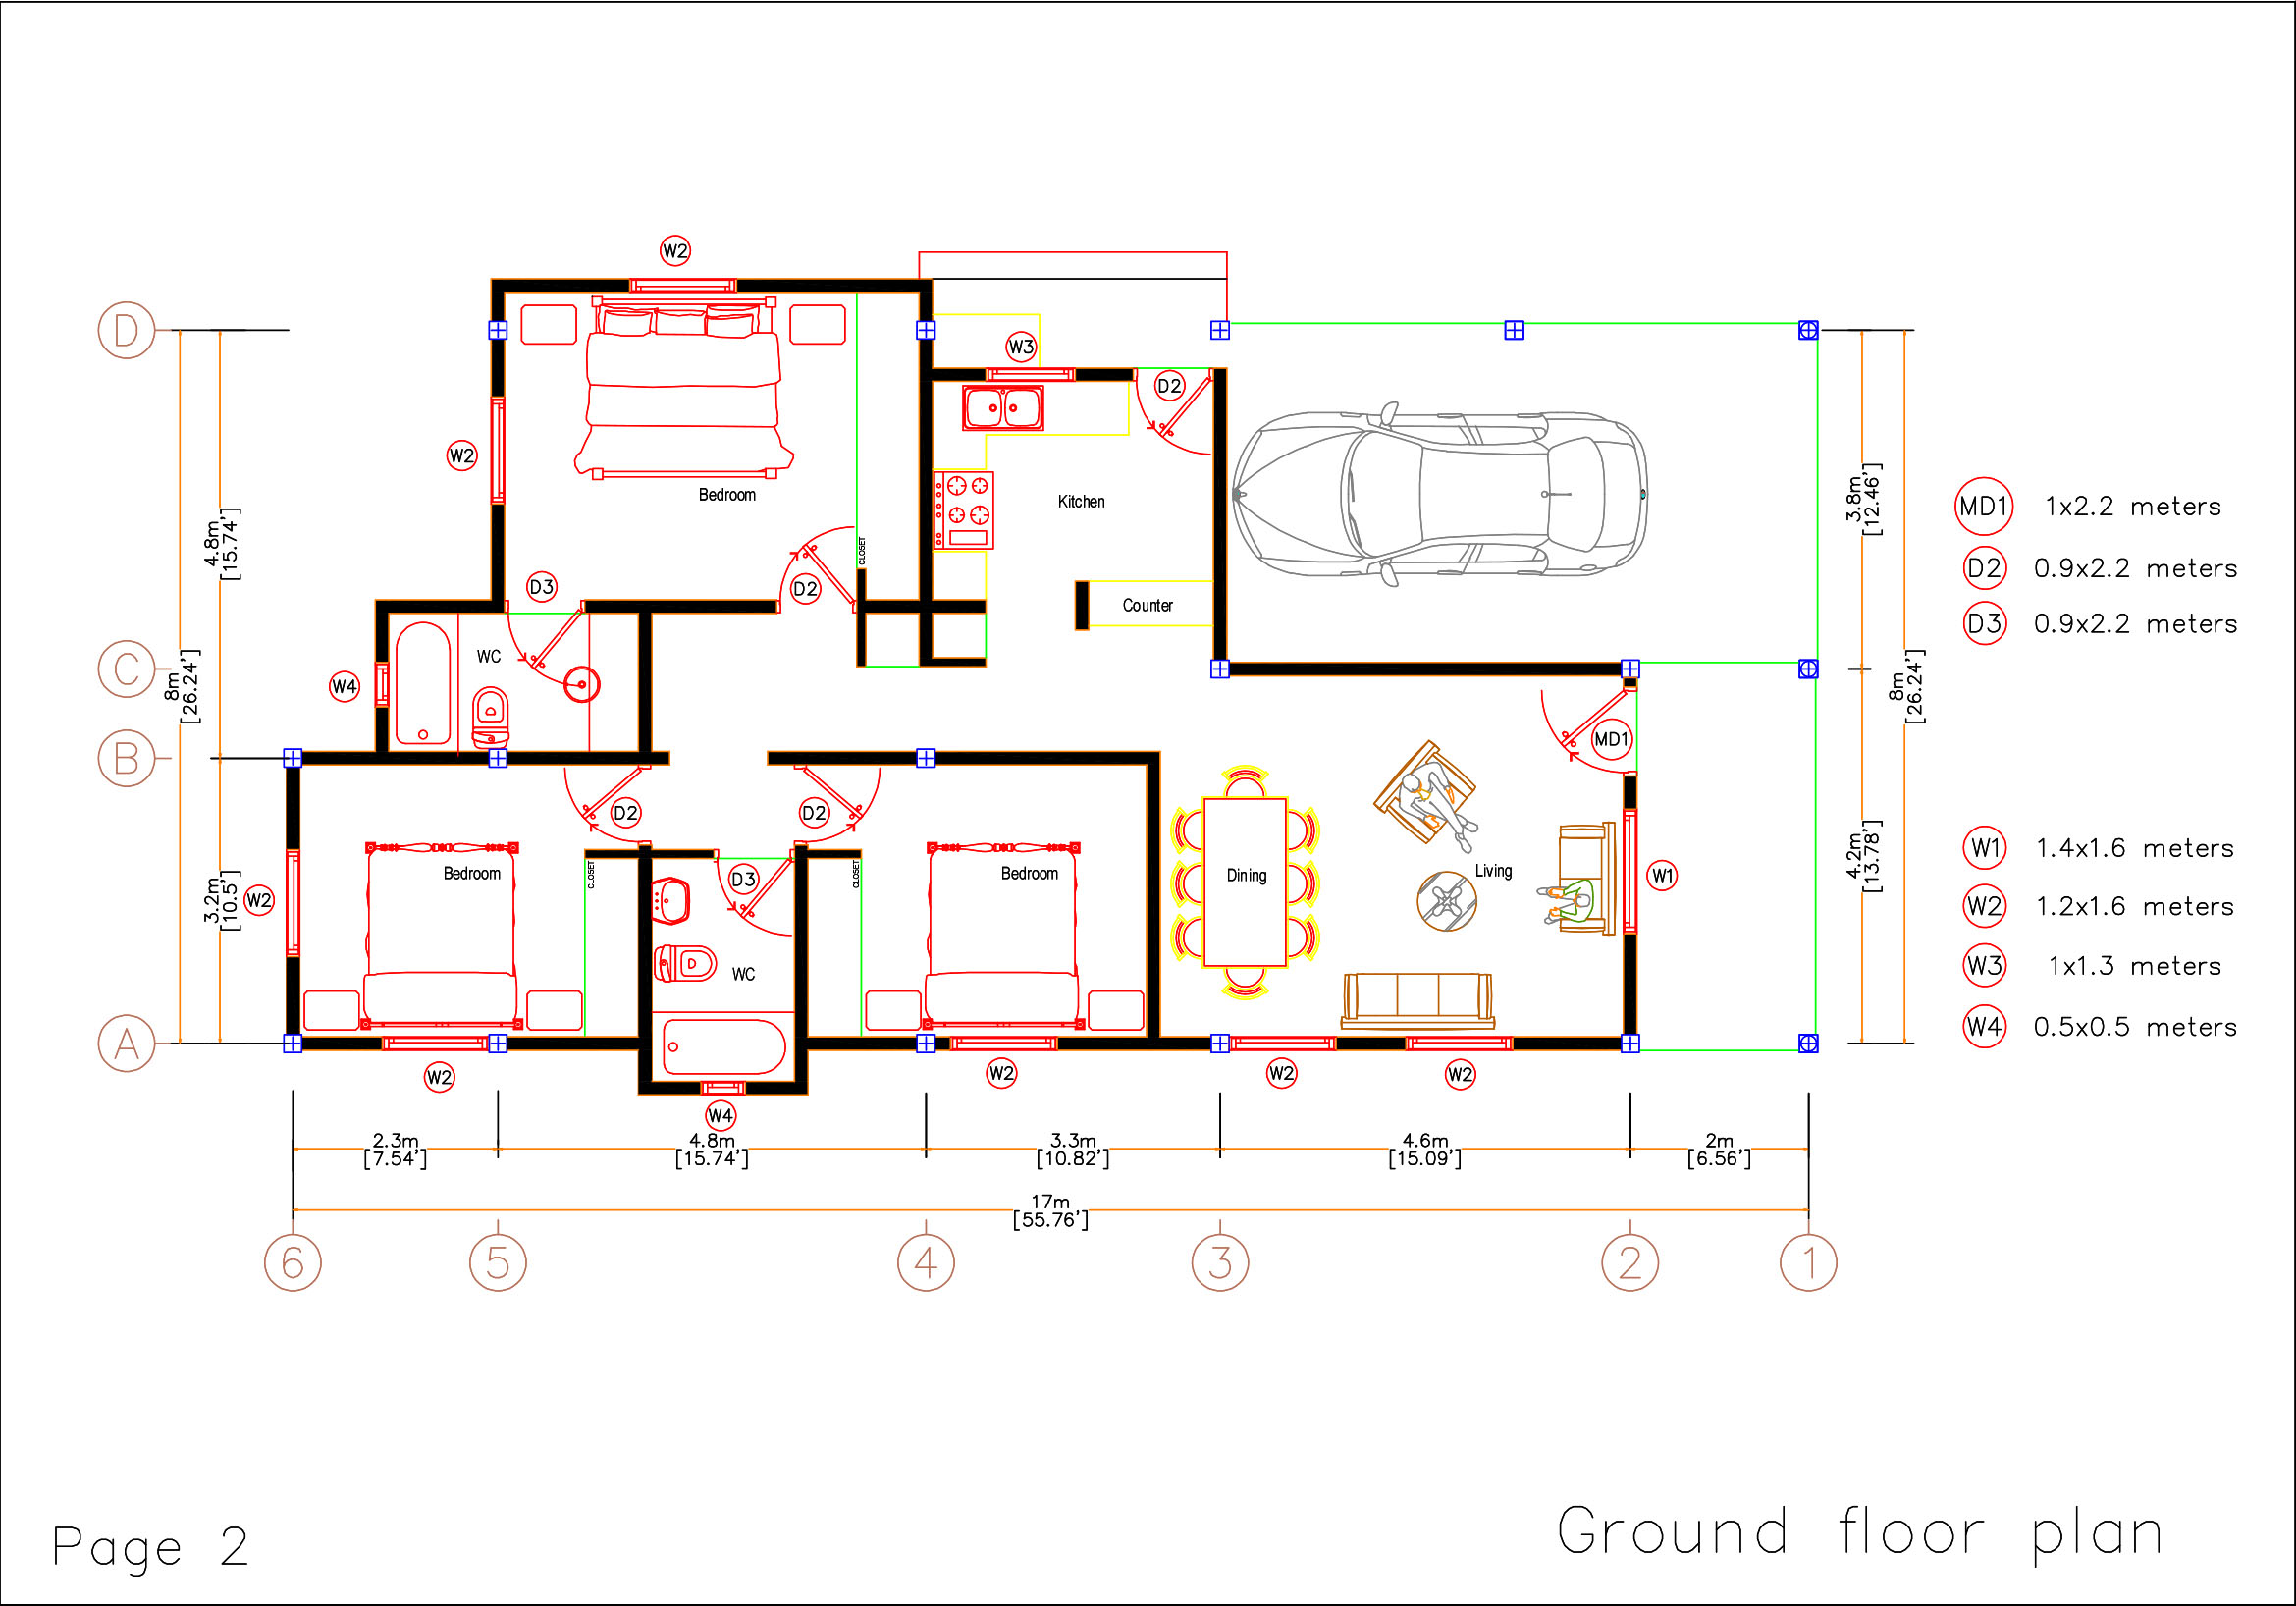 full house house floor plan